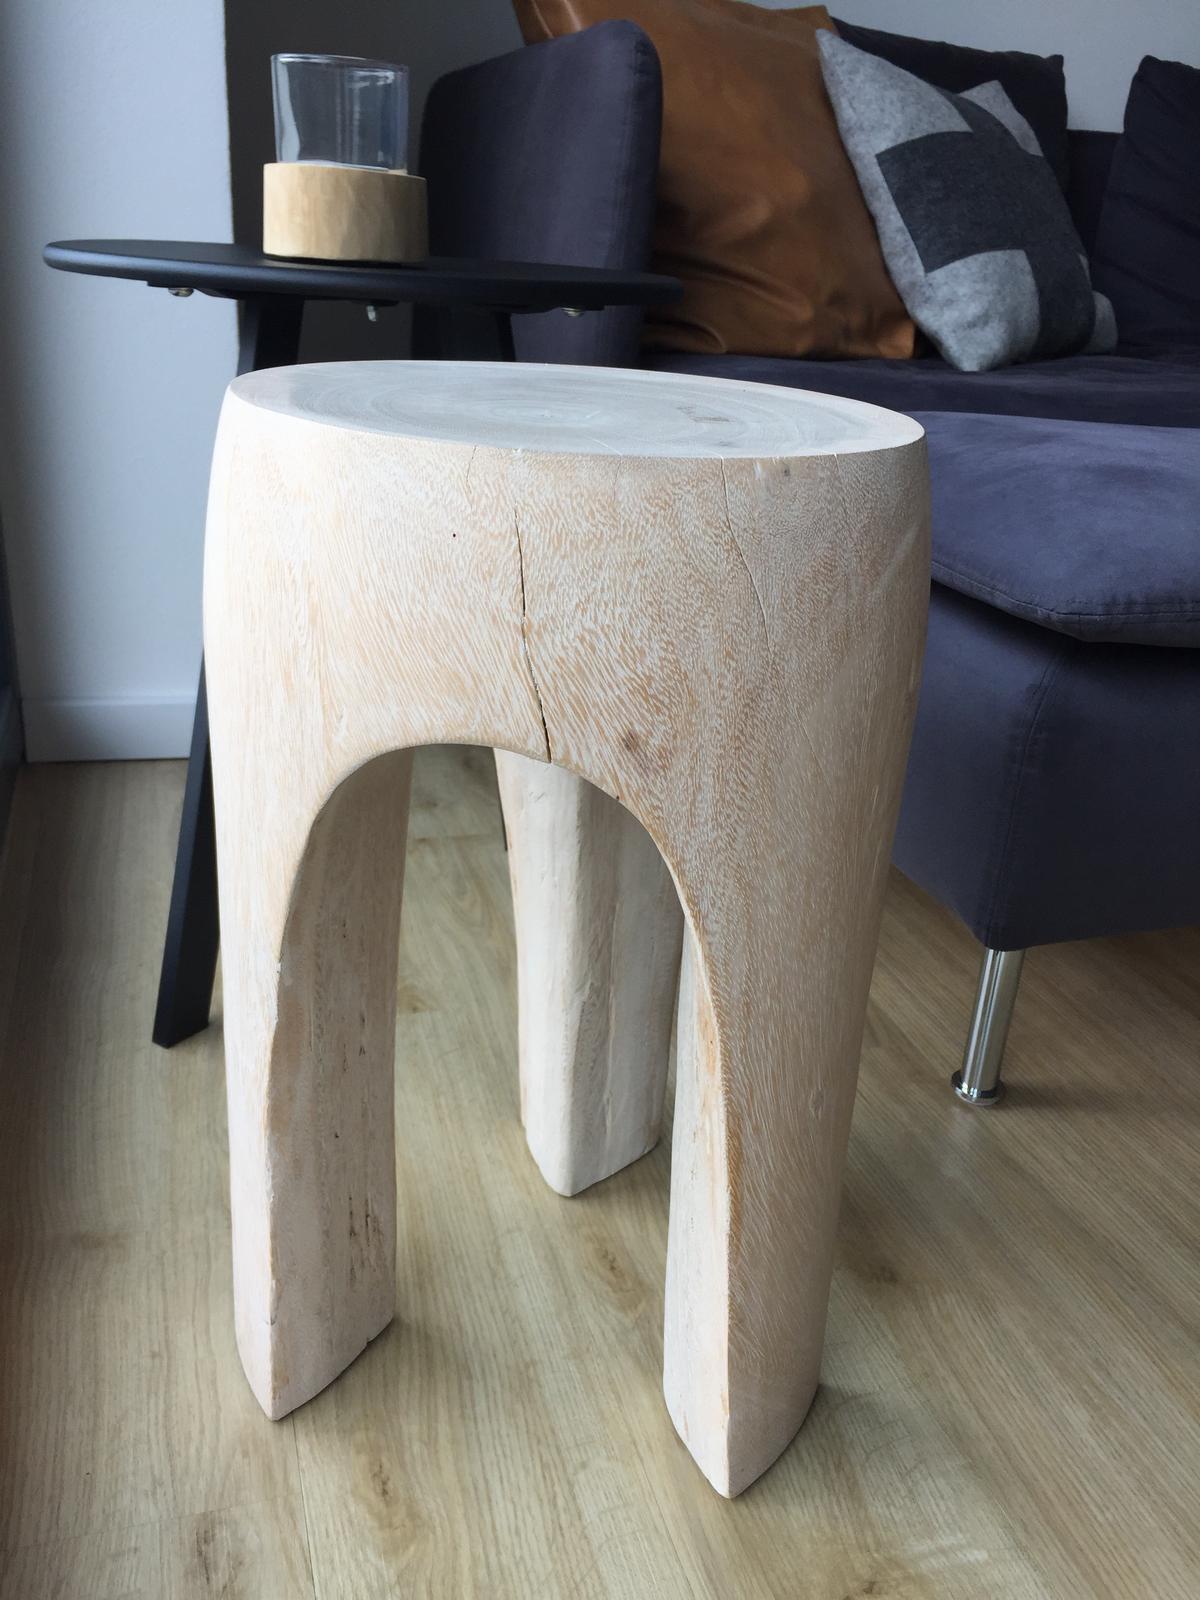 Designova drevena stolicka - Obrázek č. 3